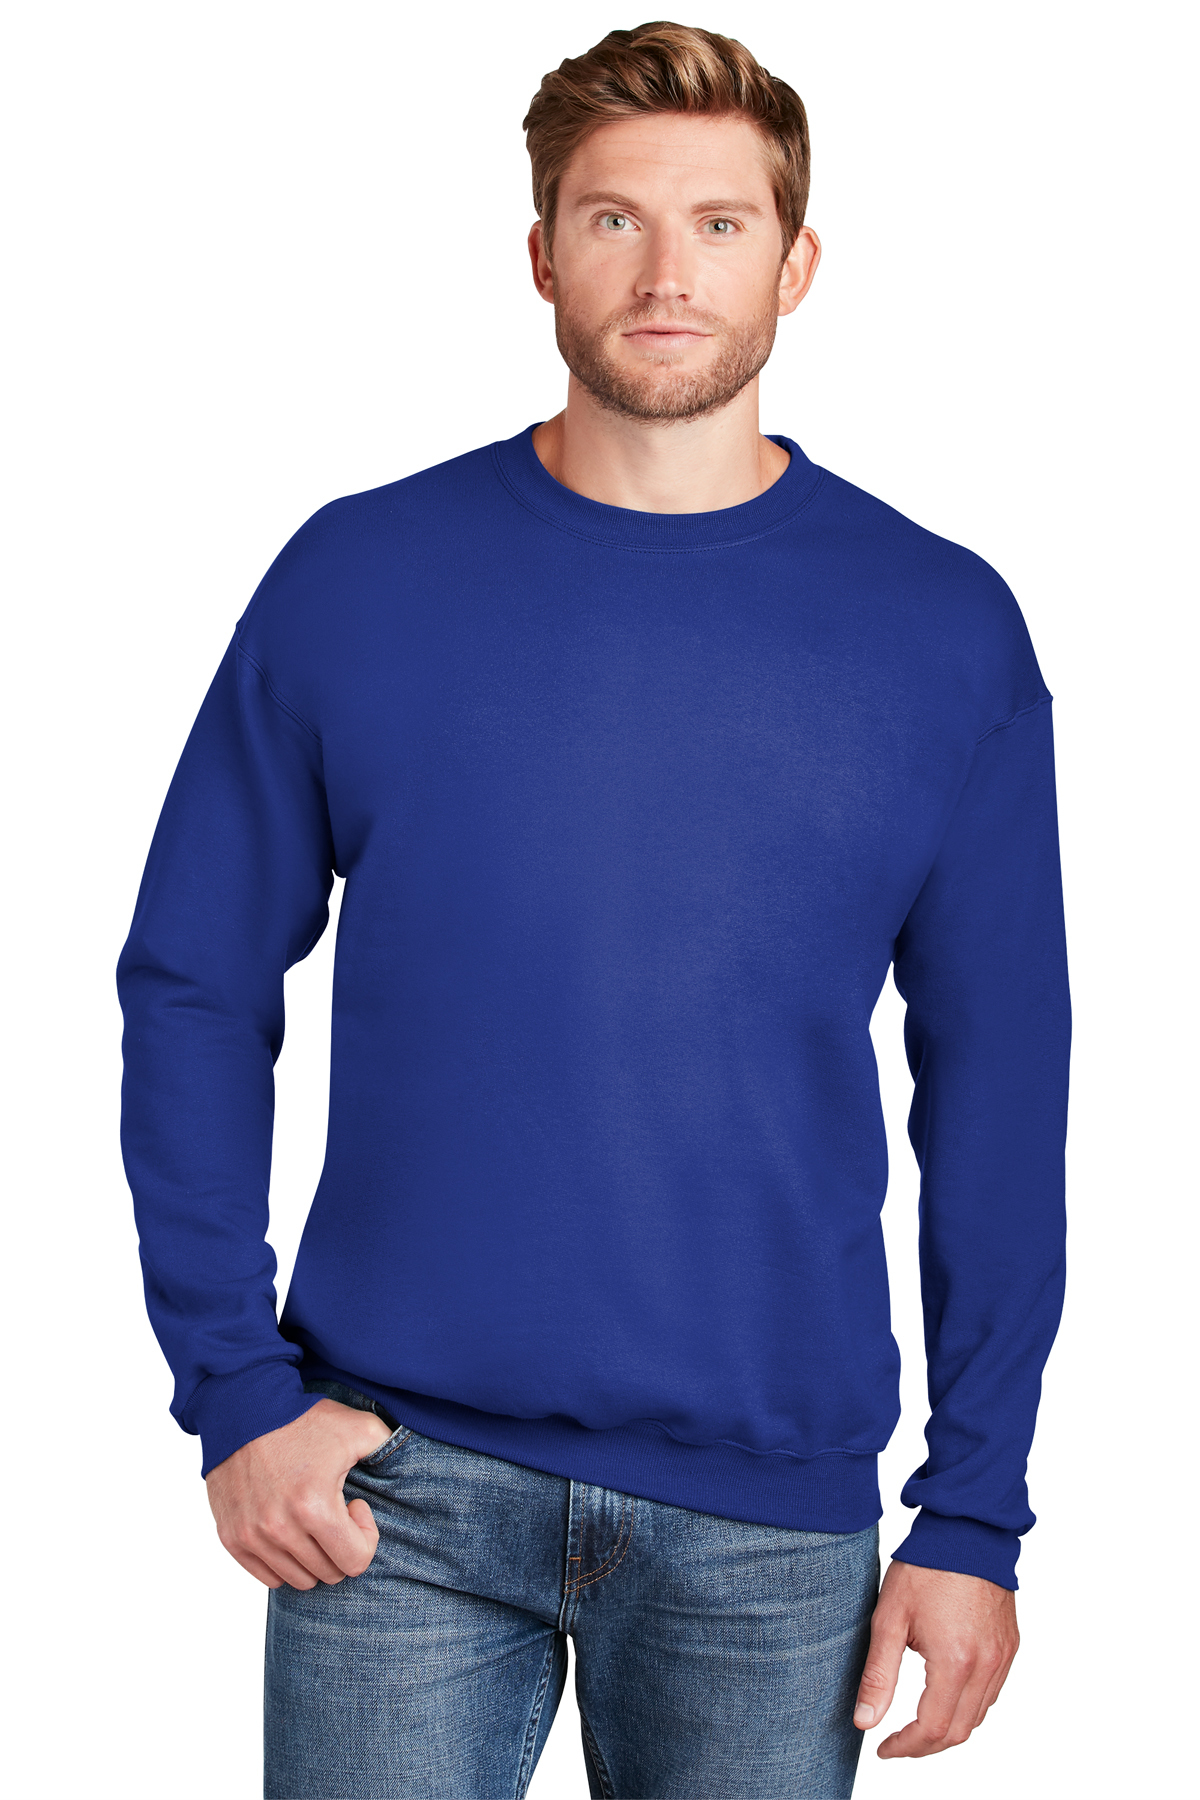 Hanes Ultimate Cotton - Crewneck Sweatshirt | Product | Company Casuals